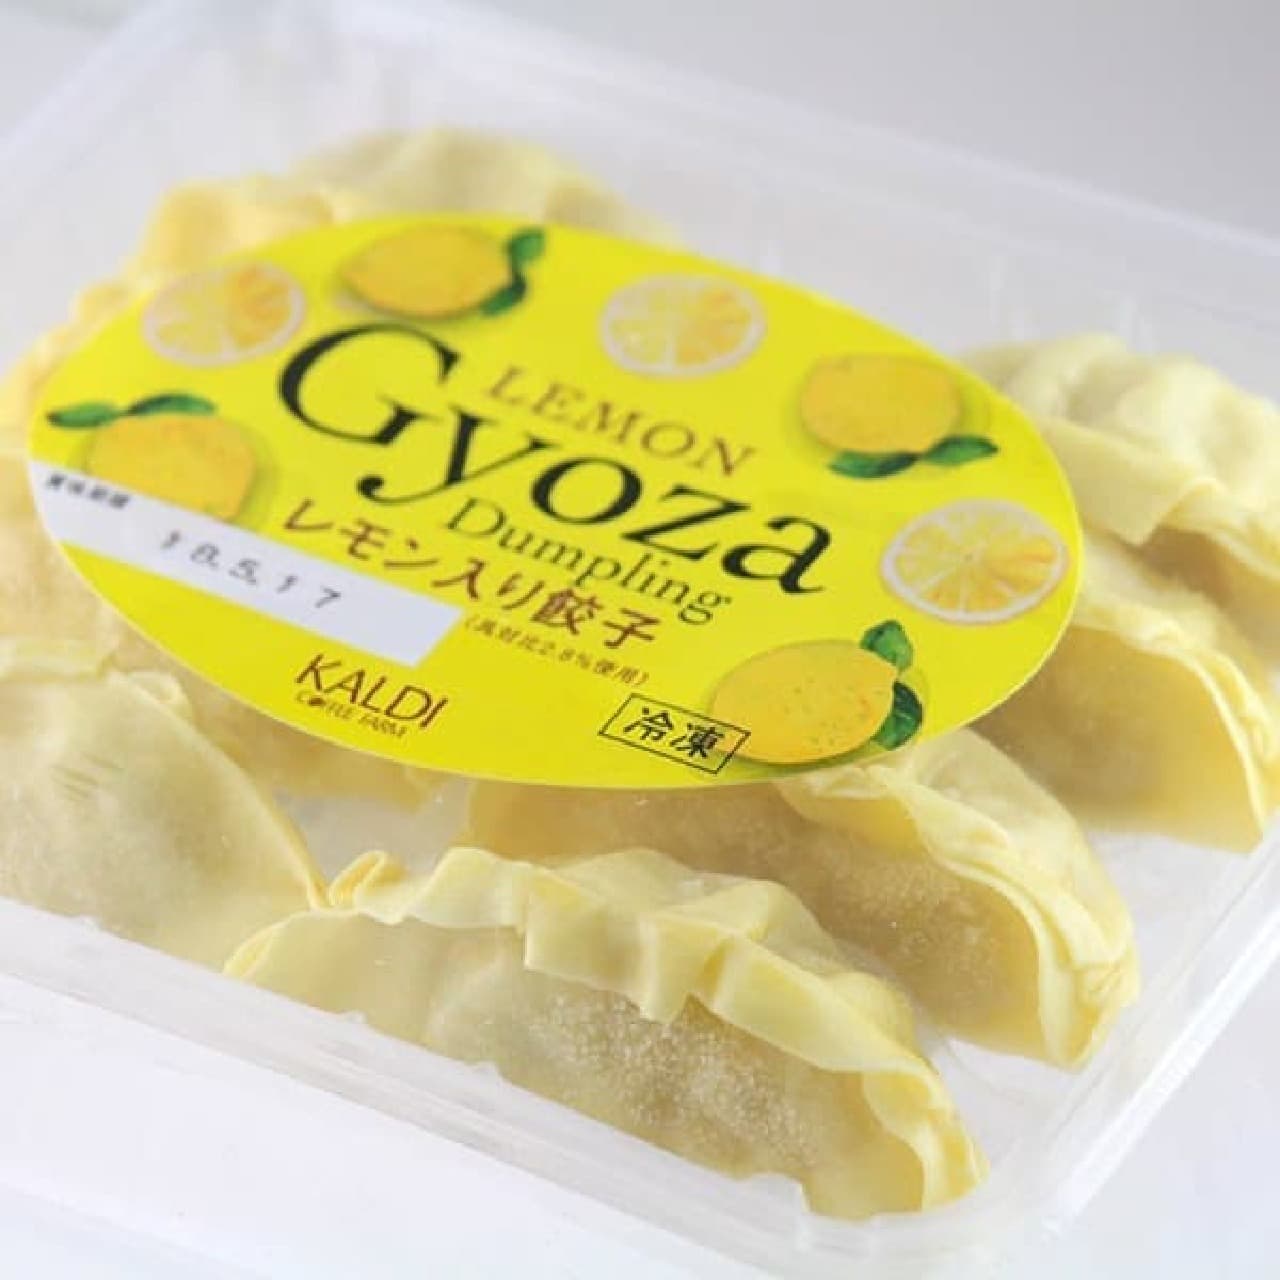 "Gyoza with lemon" in KALDI